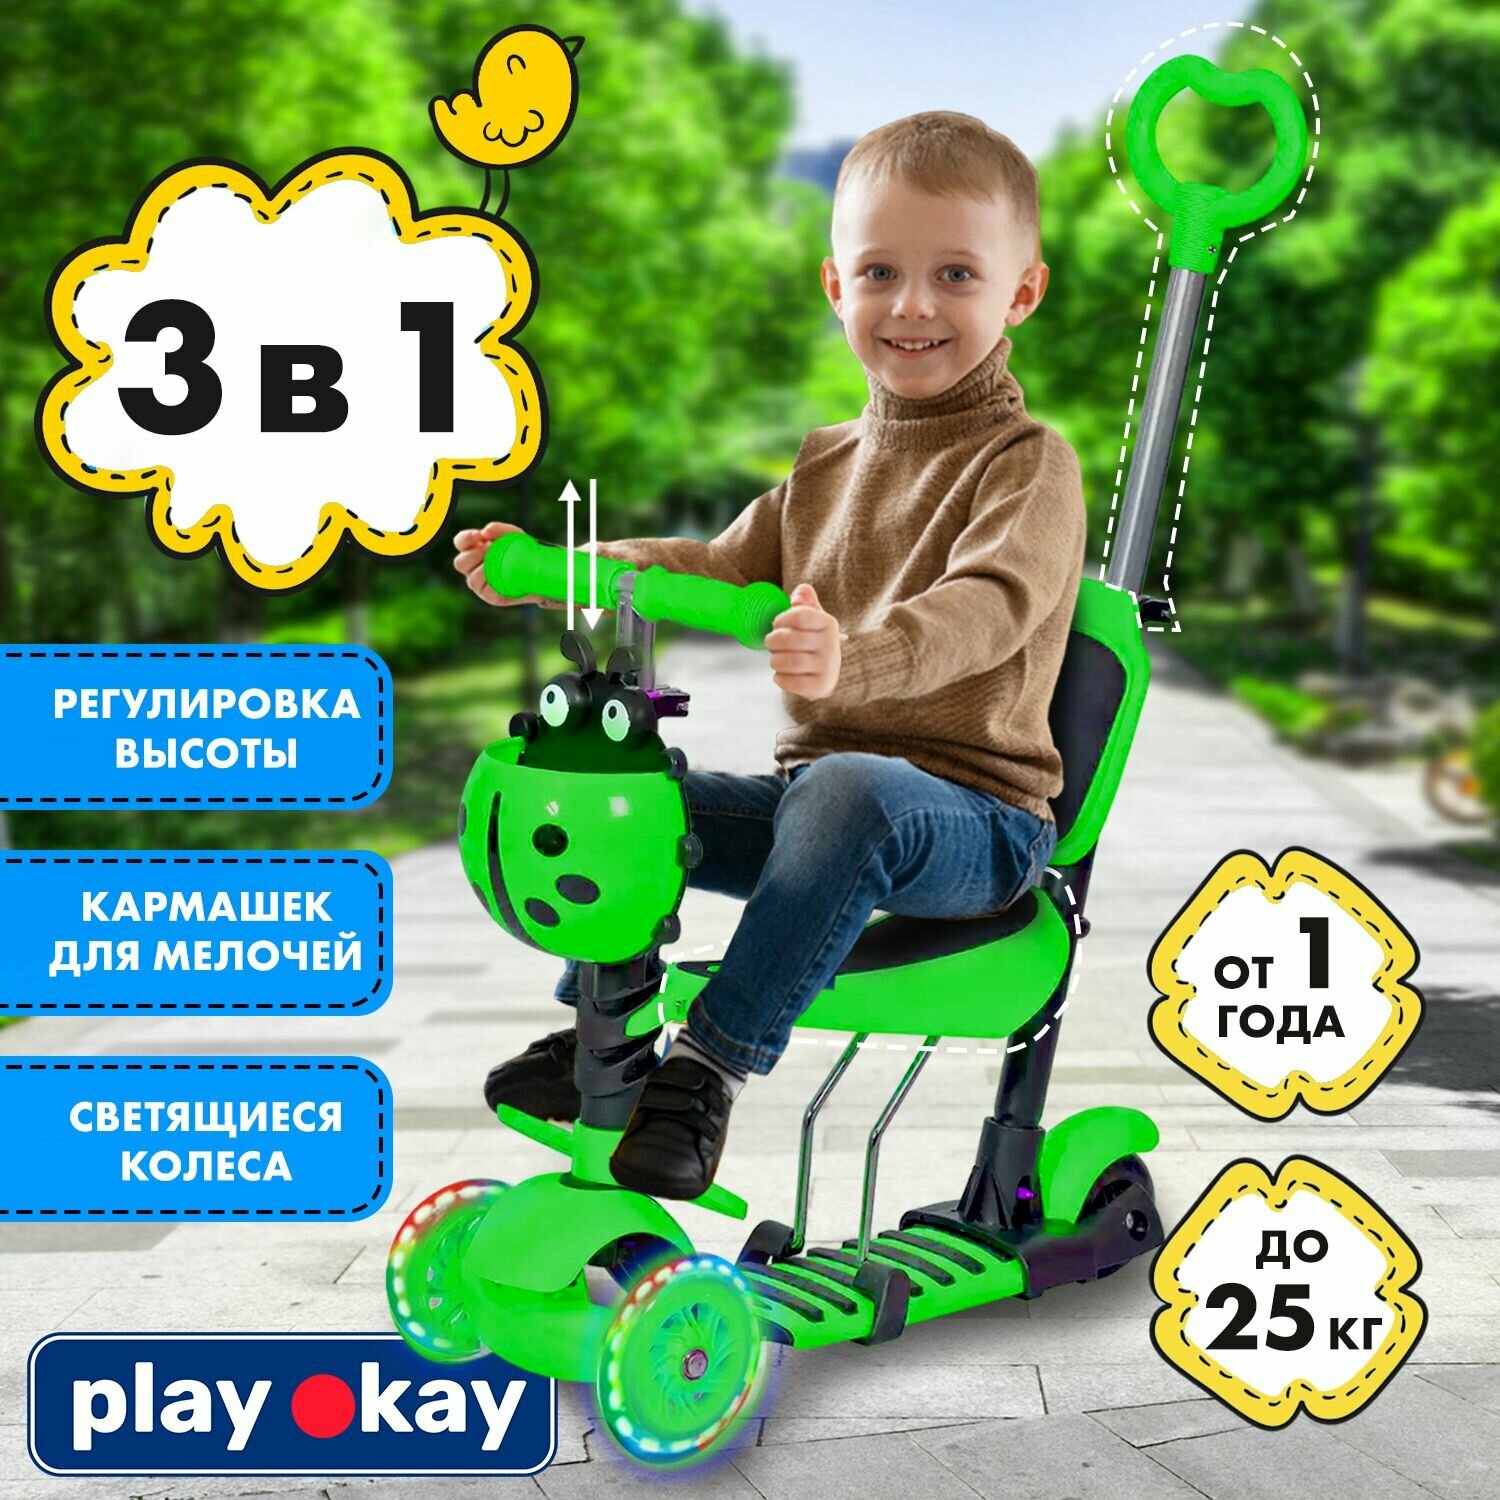 Самокат трехколесный детский с сиденьем и ручкой Play Okay H23060701 трансформер 3 в 1, для мальчика и девочки, регулировка высоты ручки, светящиеся колеса, корзина для мелочей ребенка, зеленый